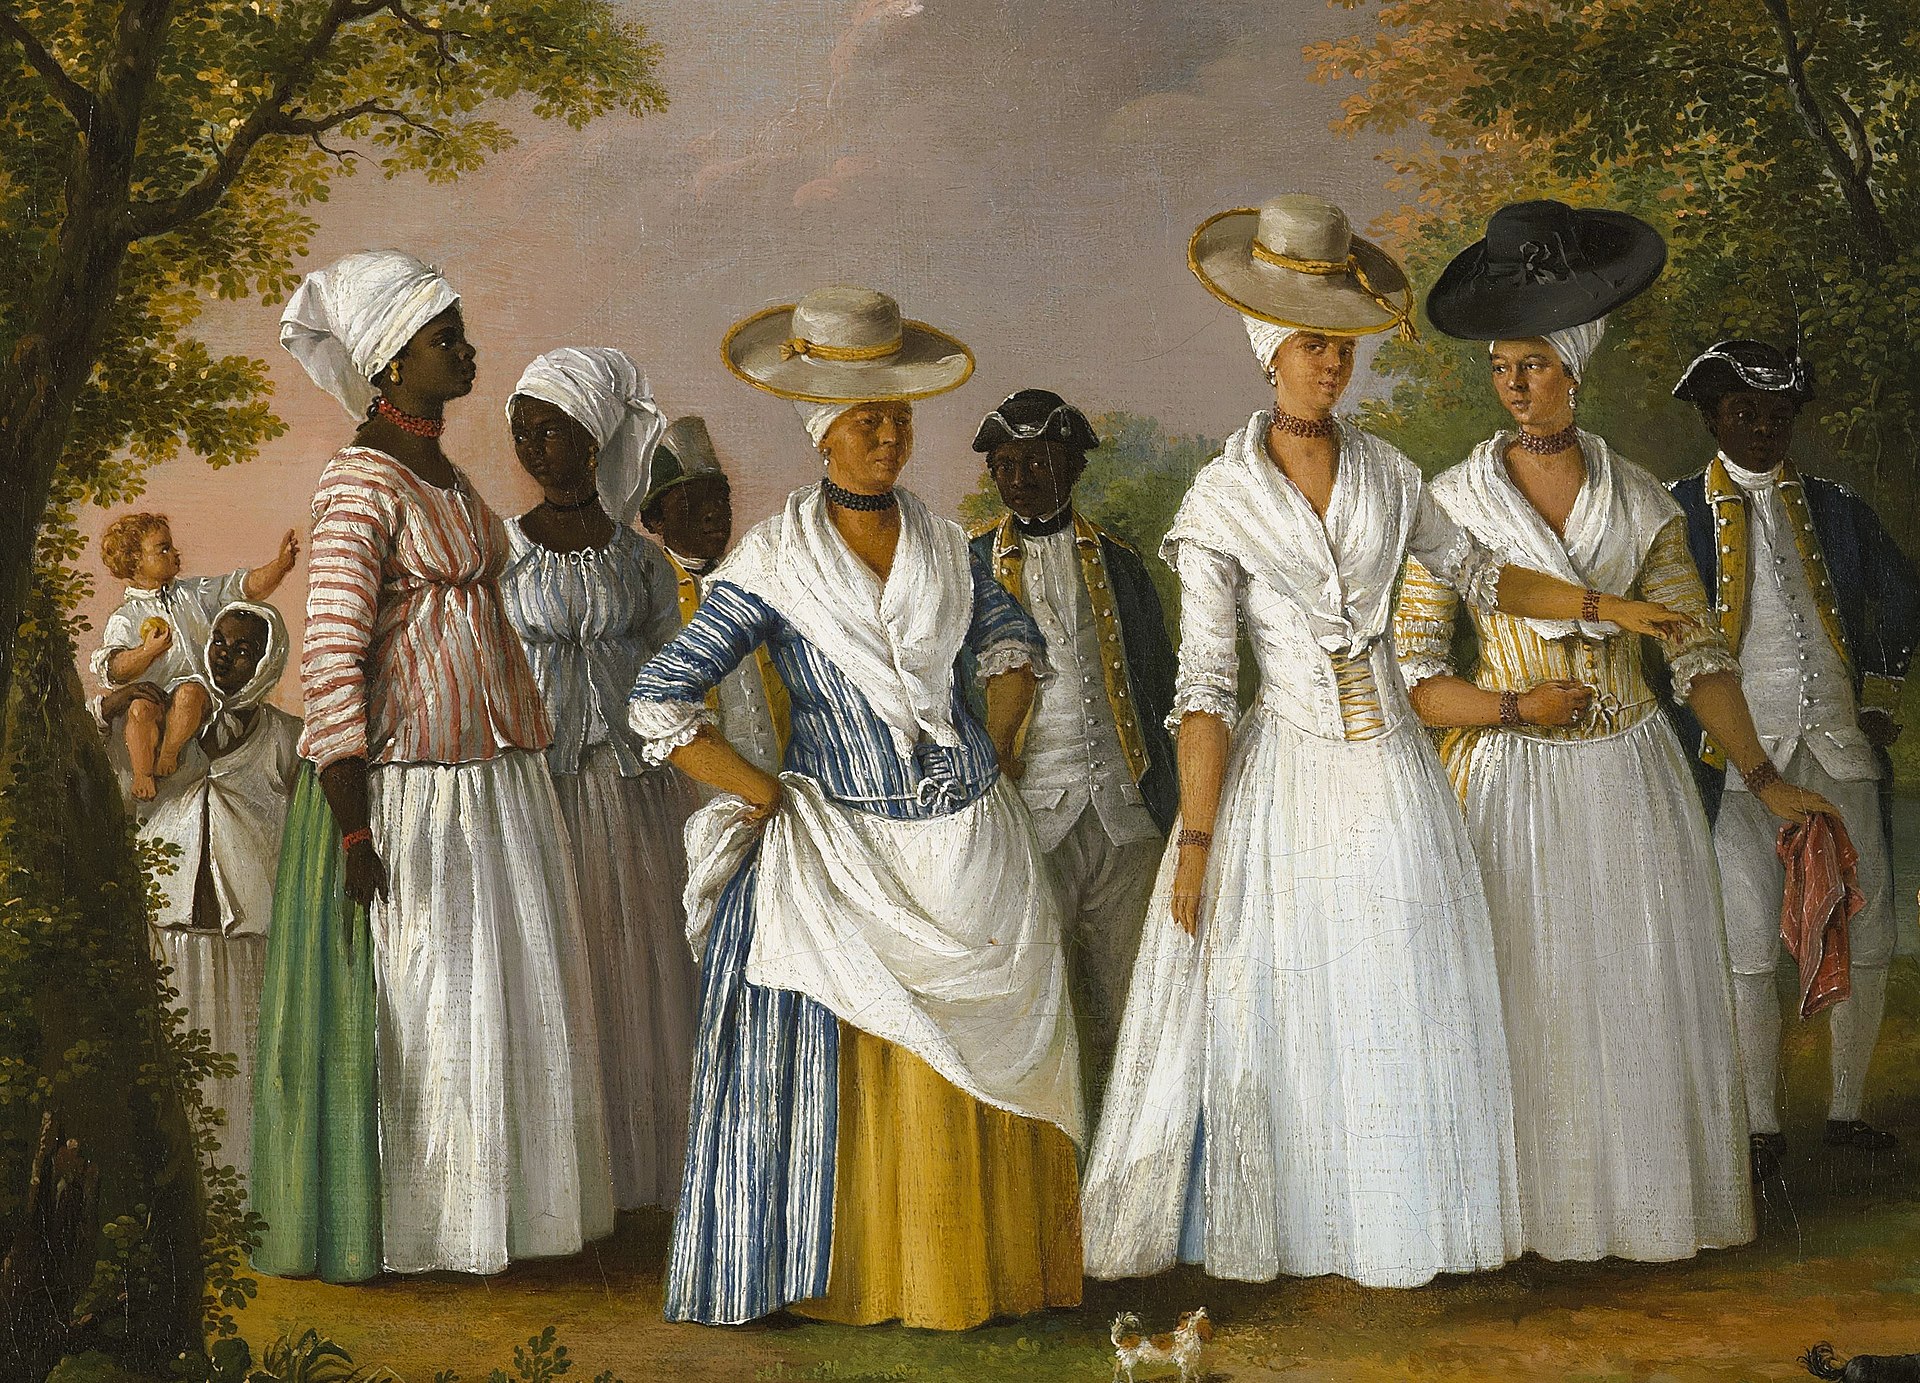 Frédéric régent Libres de couleur. Les affranchis et leurs descendants en terres d’esclavage (XIVe-XIXe siècle)